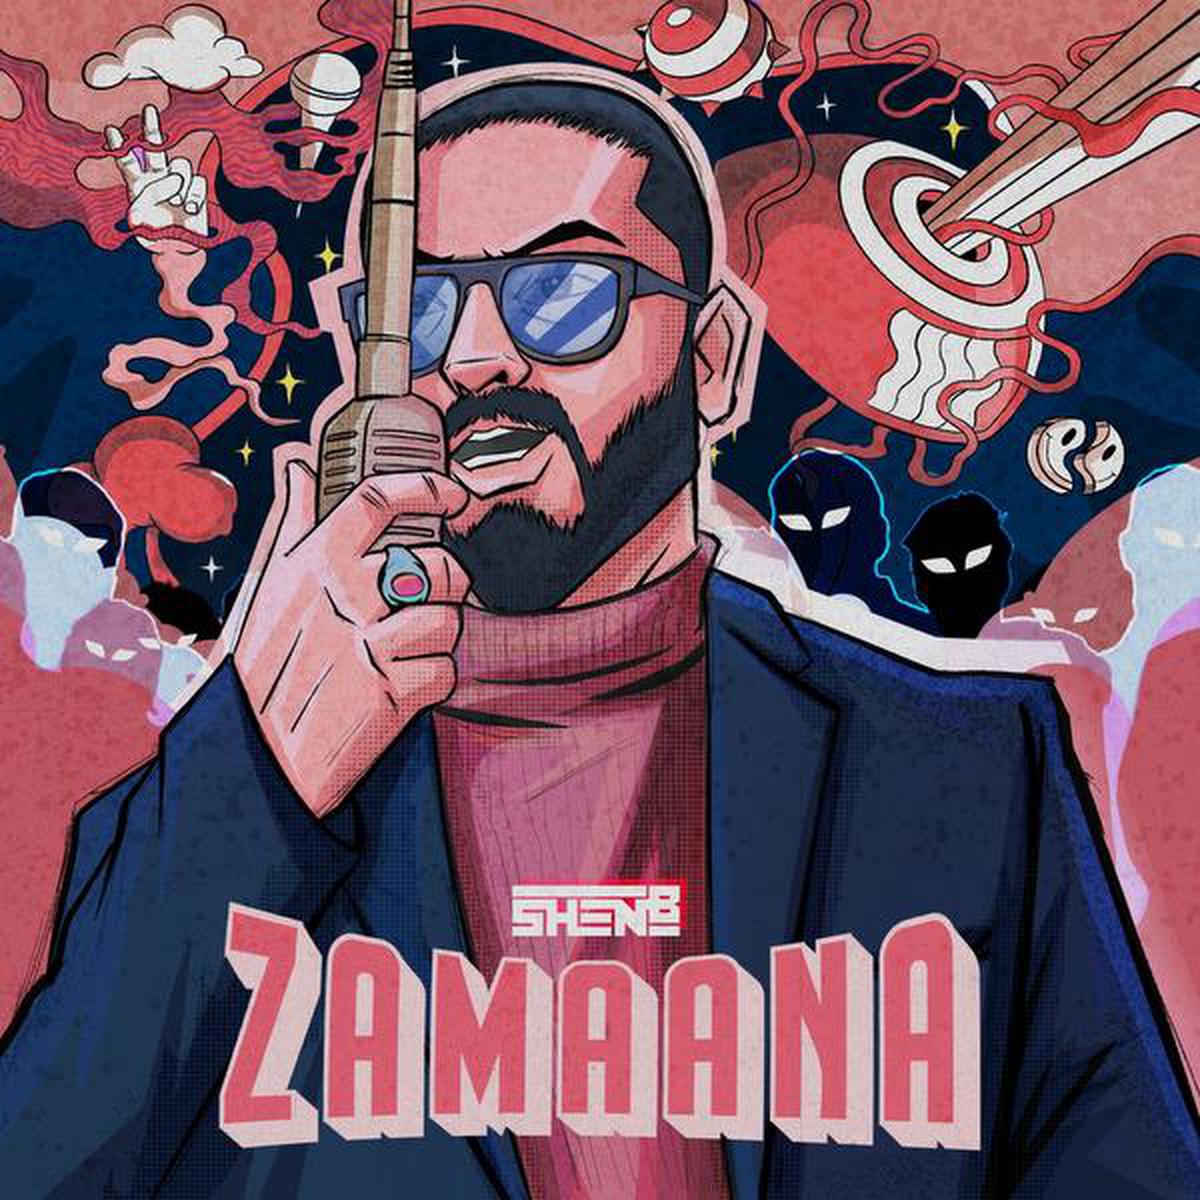 Artwork for music video Zamaana